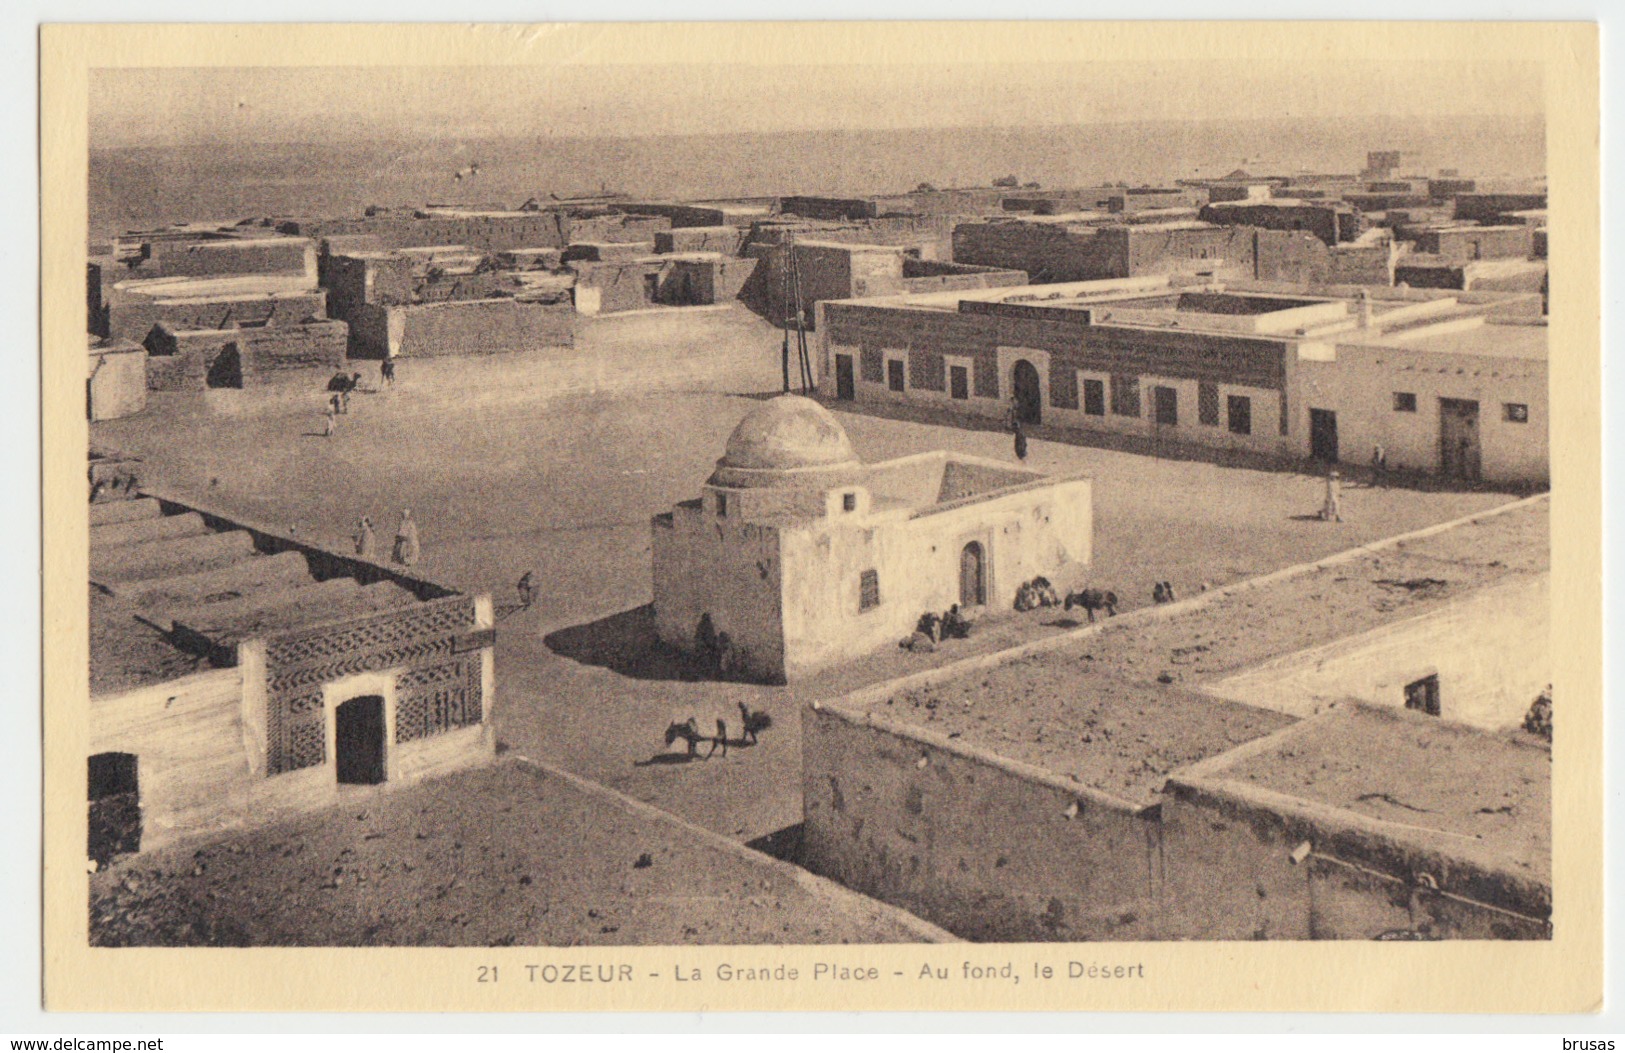 Tozeur - Le Grande Place - Tunisie